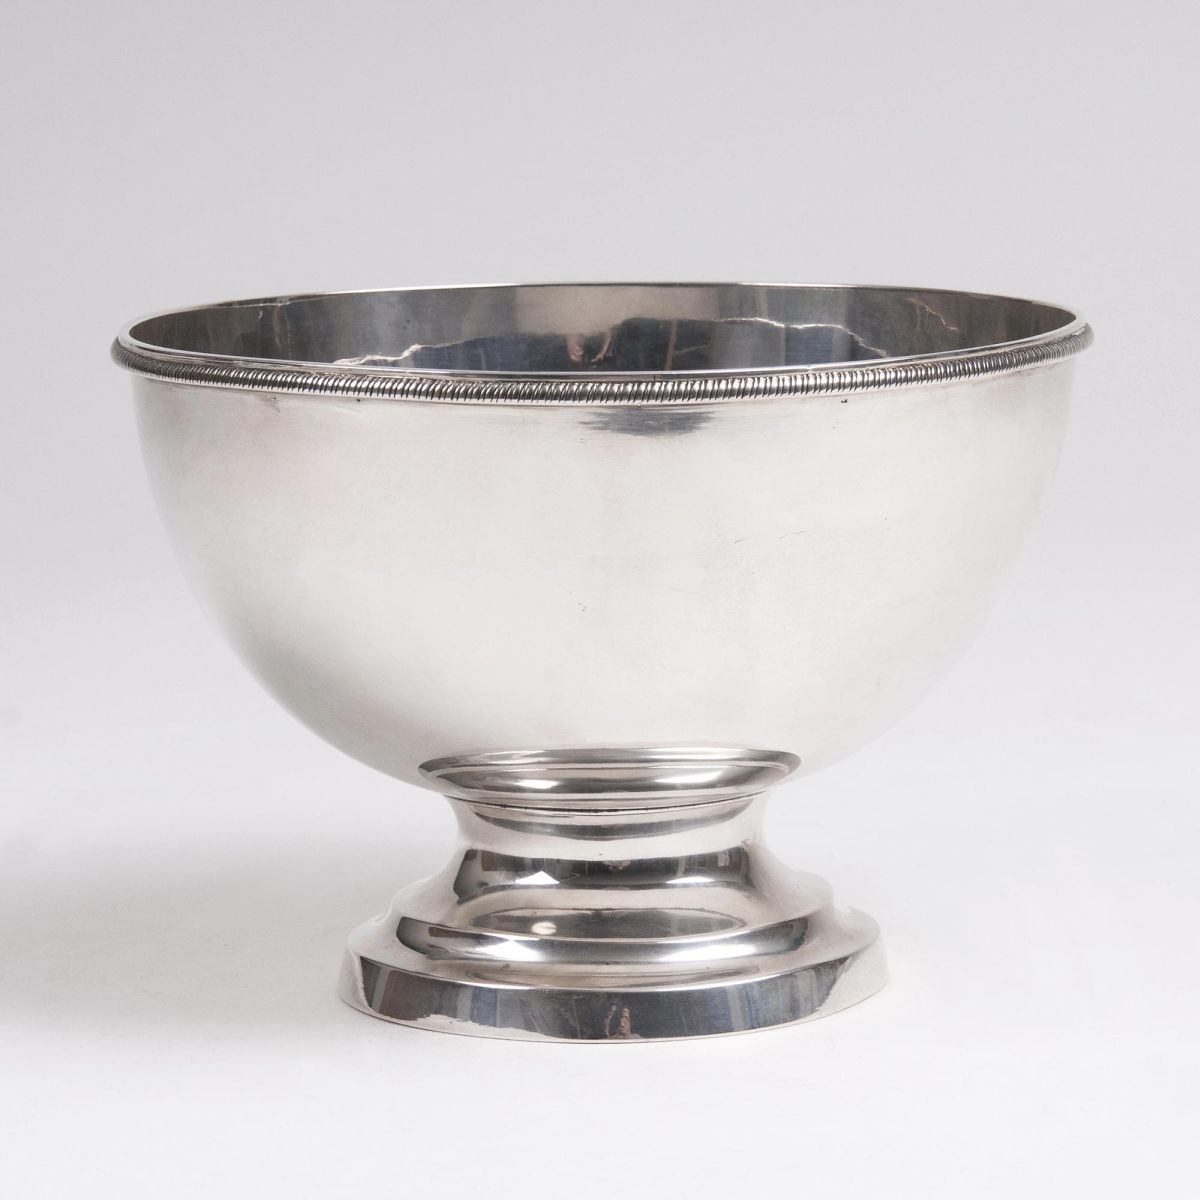 A Silver Bowl